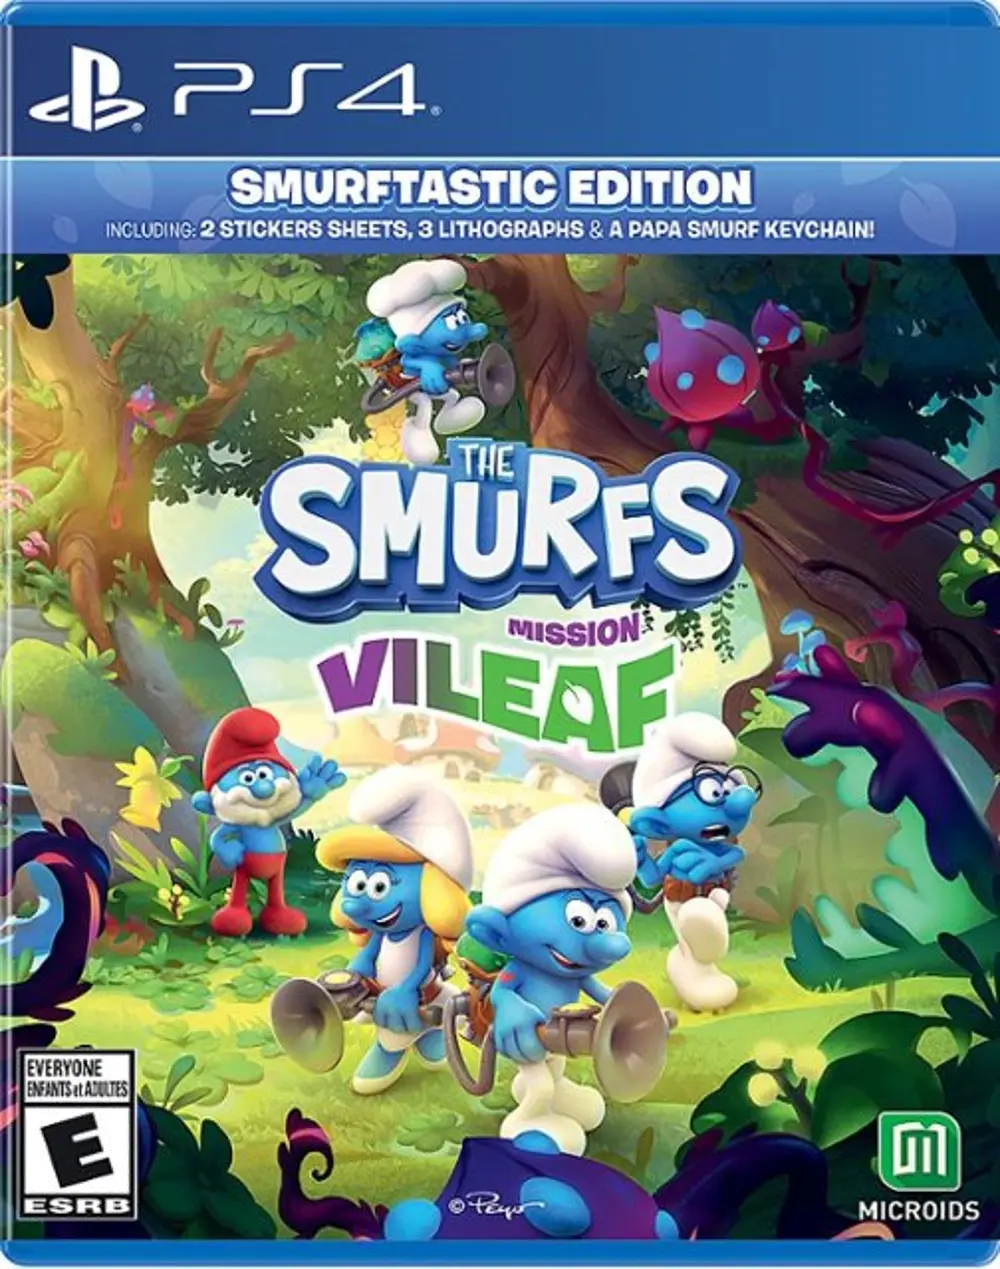 PS4/SMURFS_MISSION_V The Smurfs - Mission Vileaf - Smurftastic Edition - PS4-1